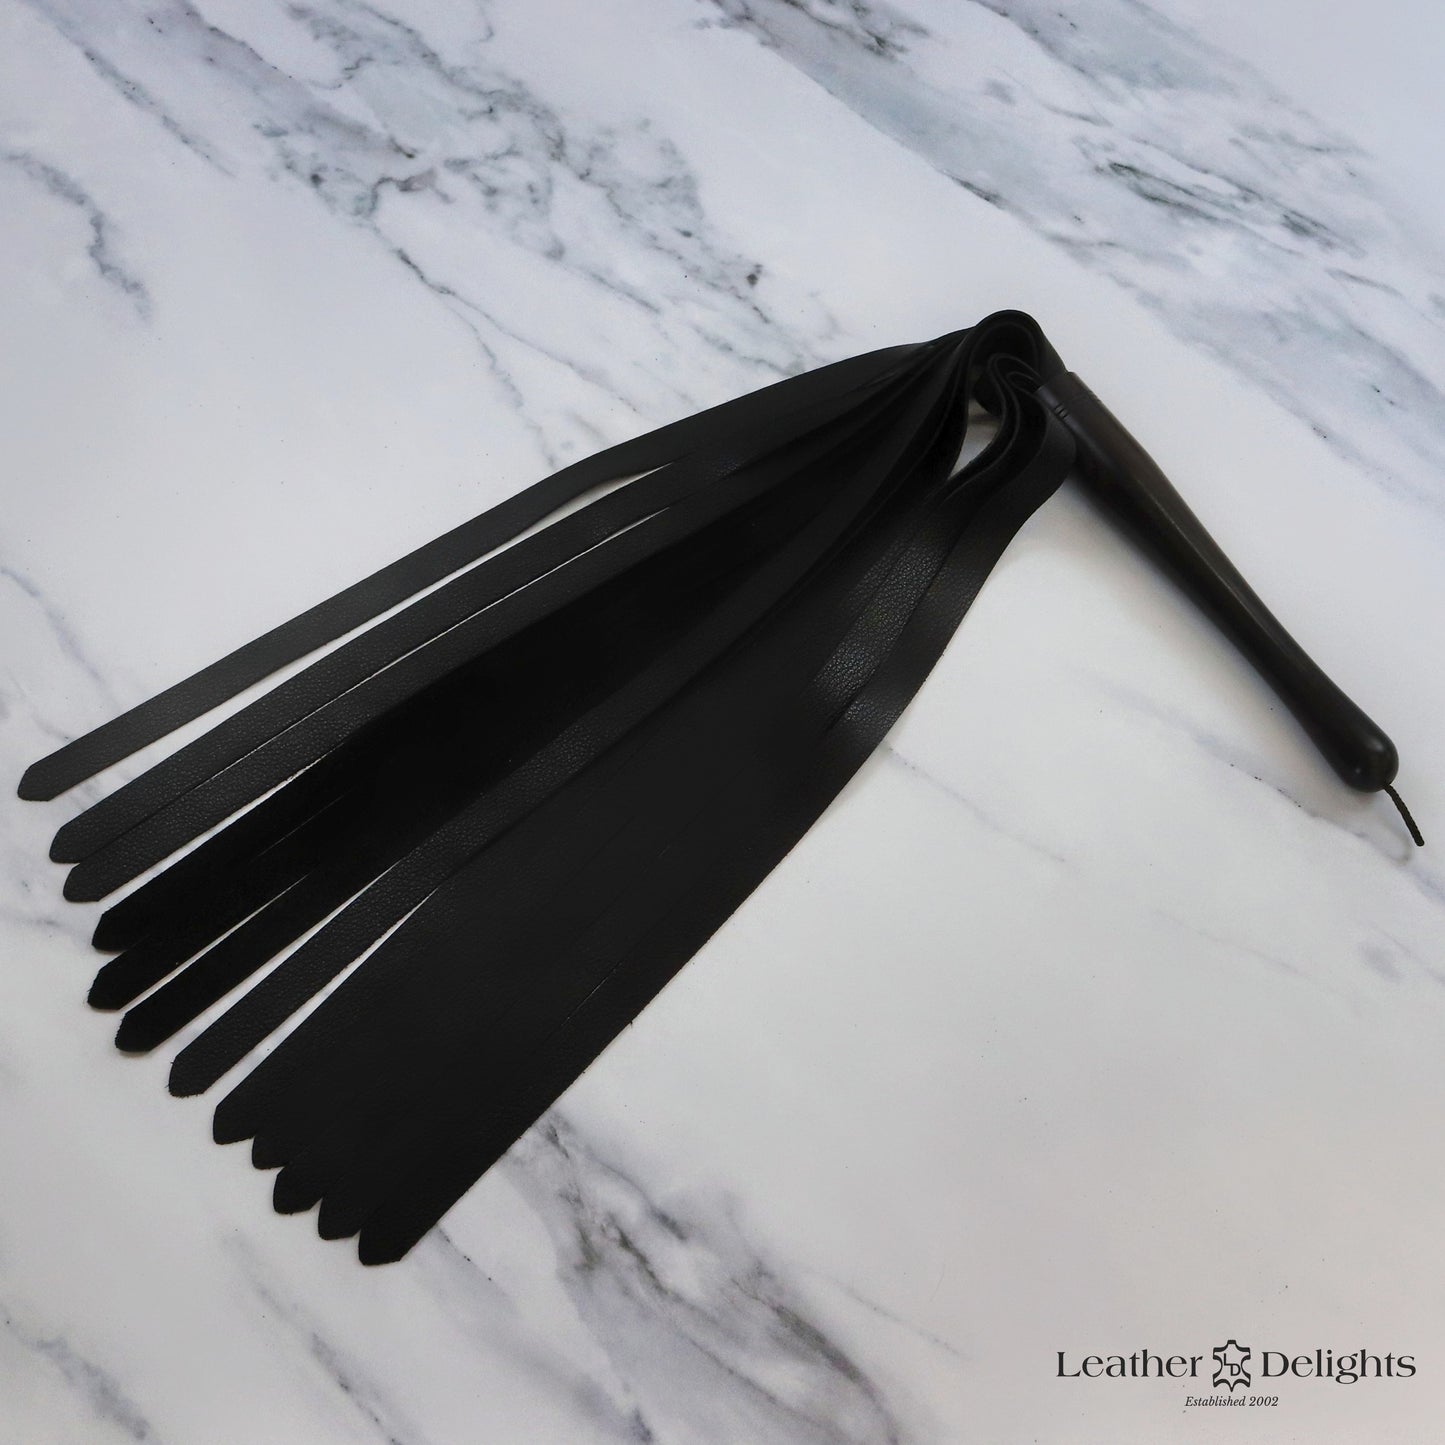 Large Soft Black Leather Flogger with Ebony Handle